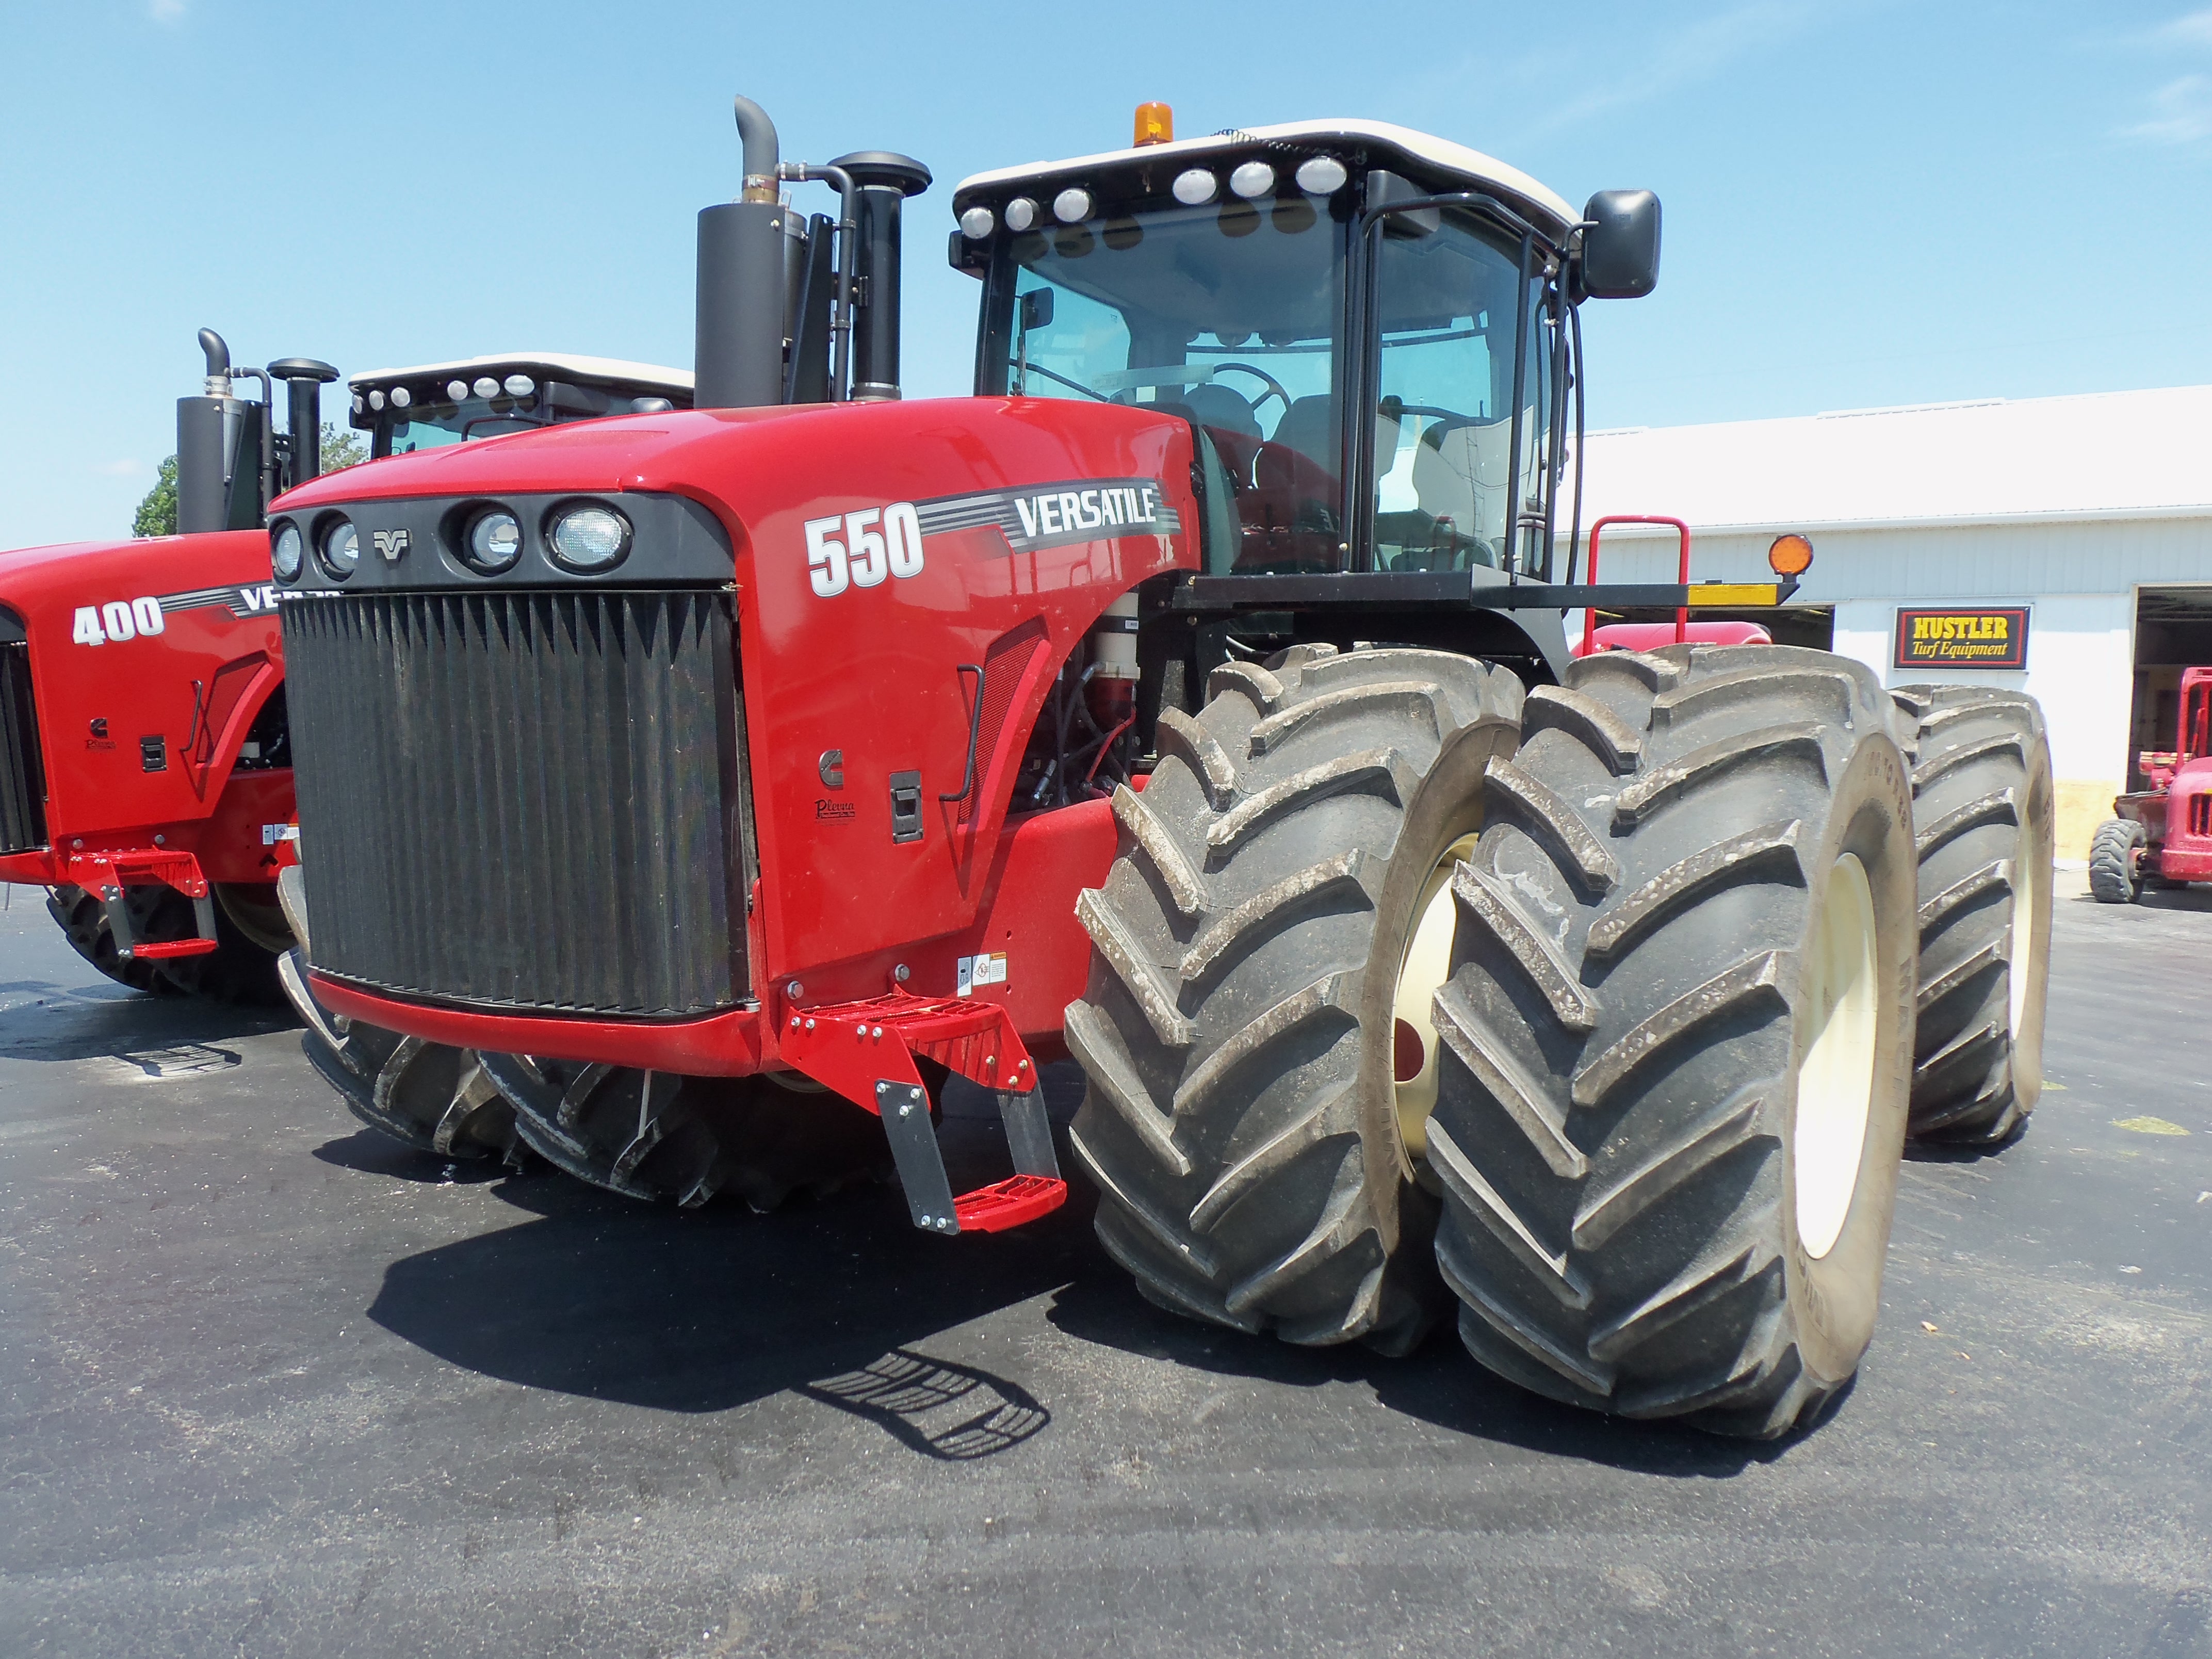 Versatile 550 | Versatile tractors & equipment | Pinterest | Tractors